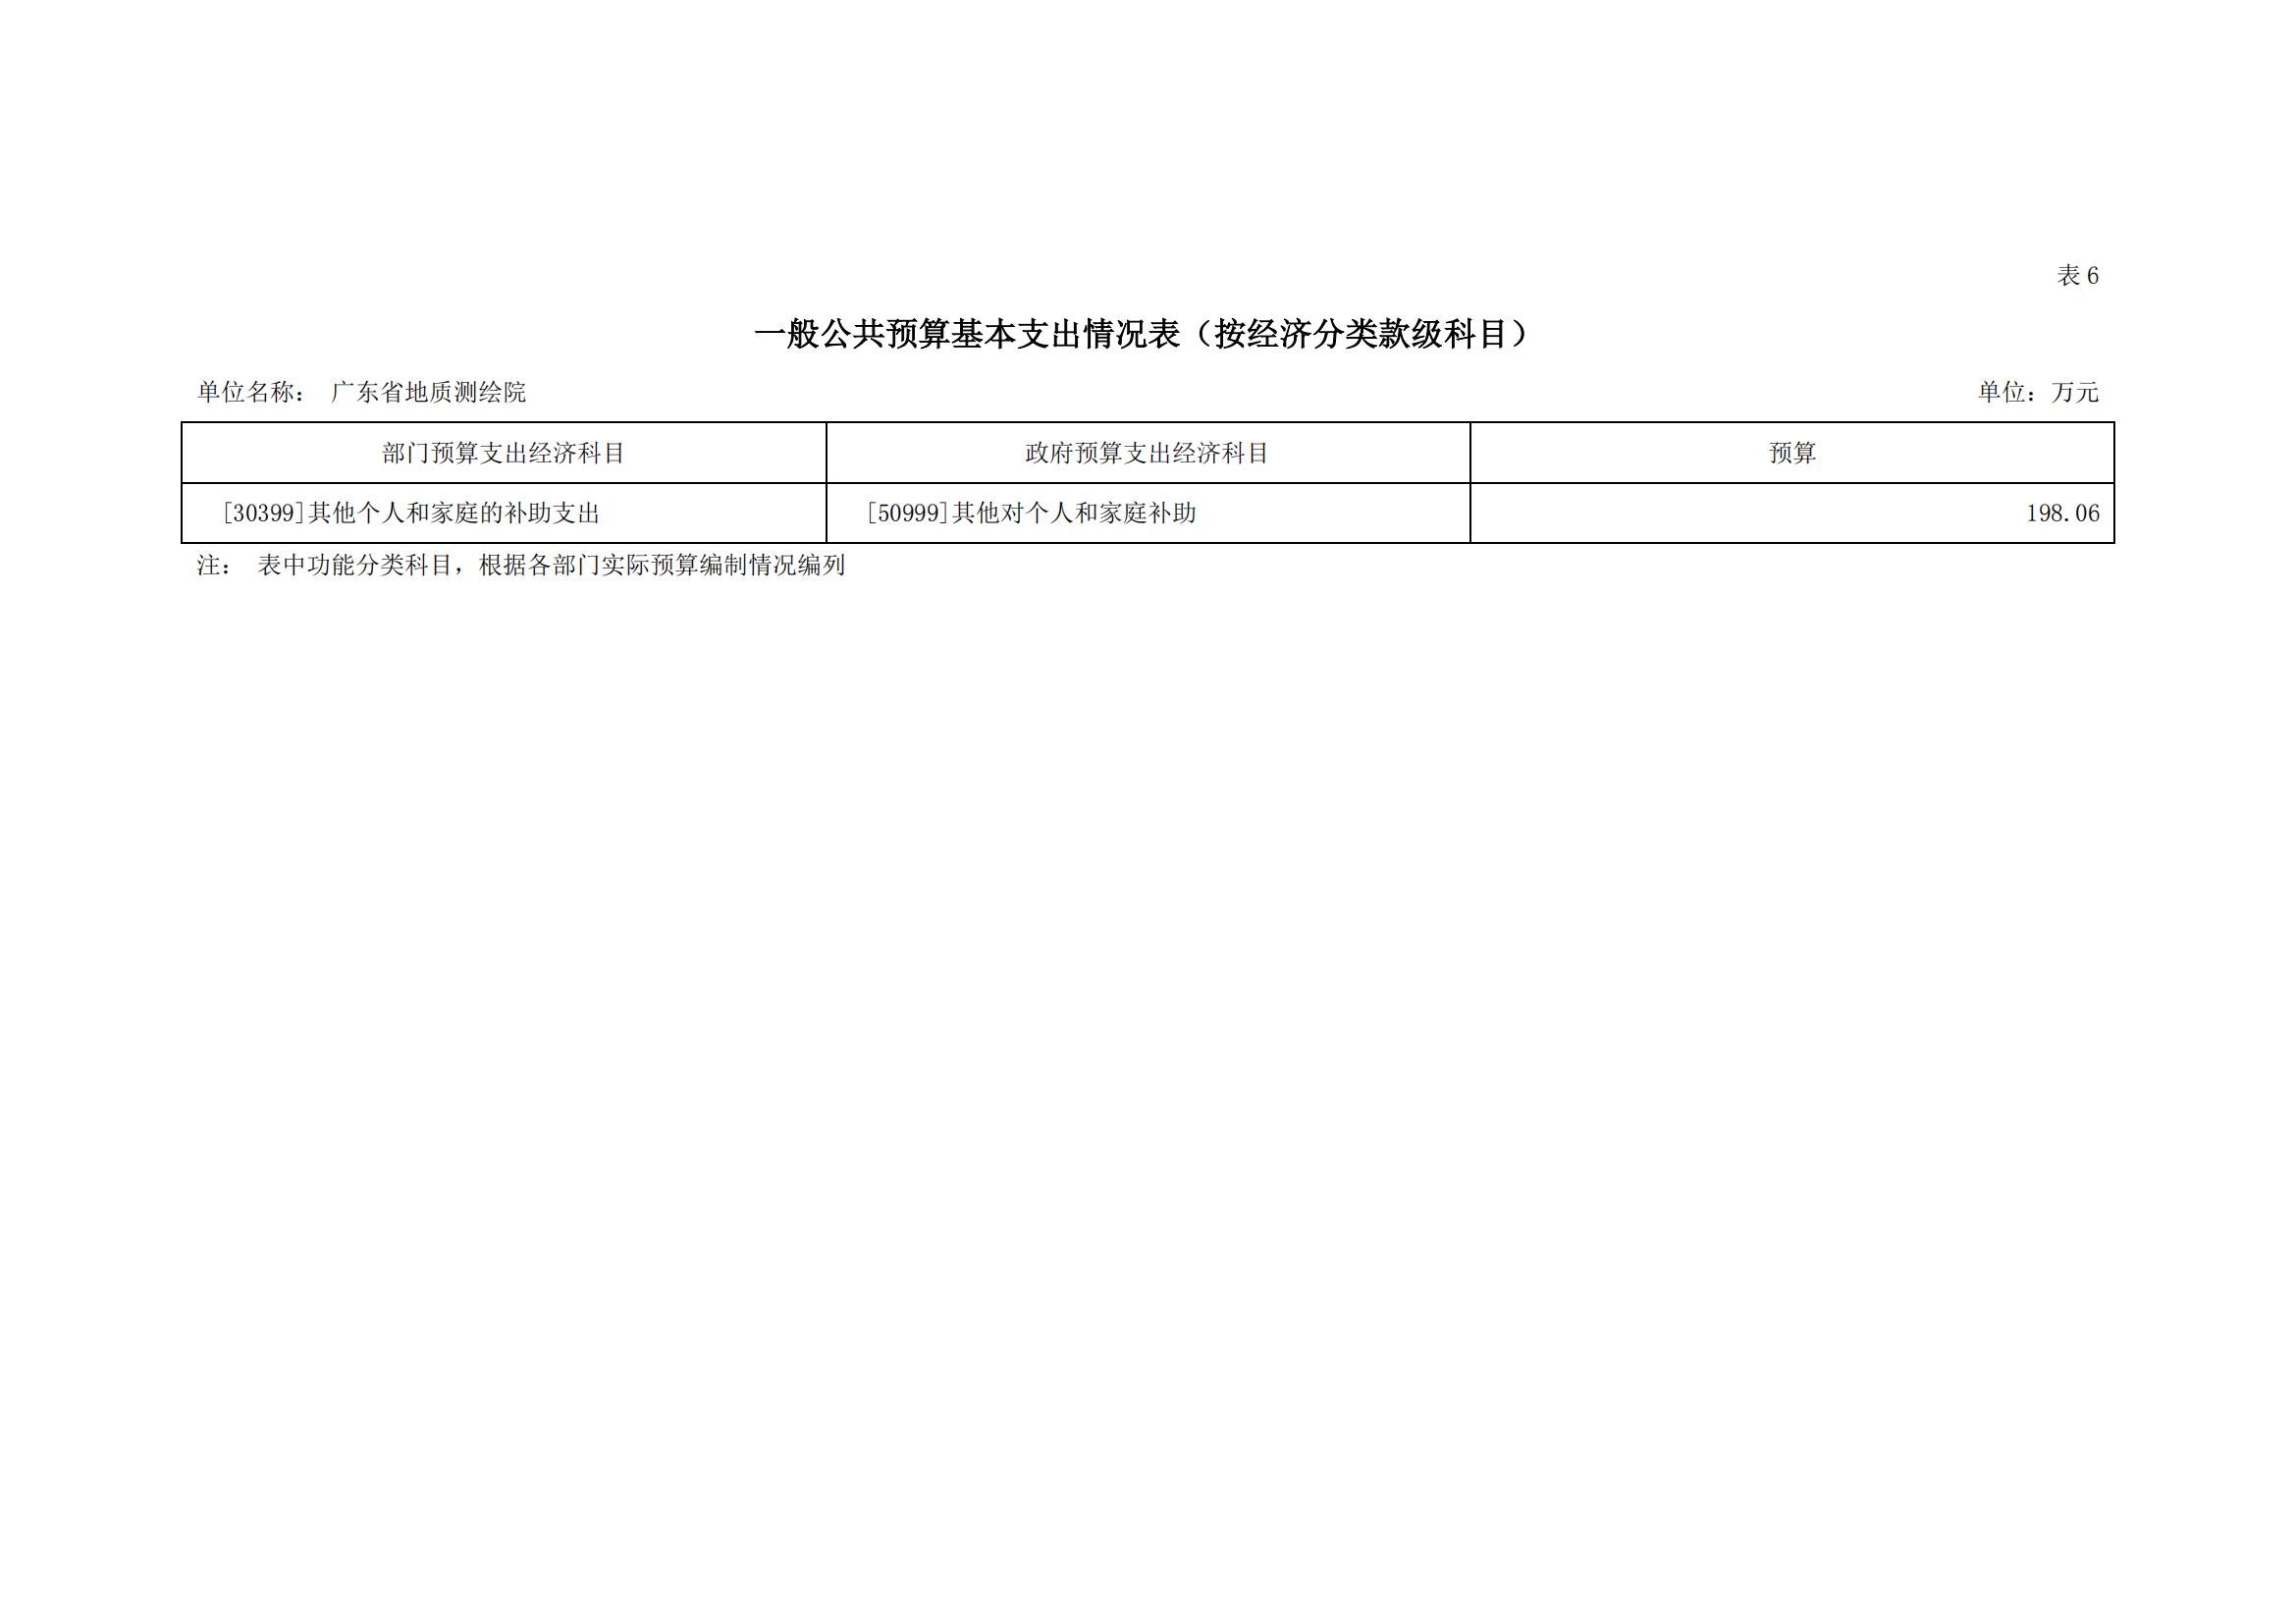 2021年广东省地质测绘院部门预算公开_12.jpg